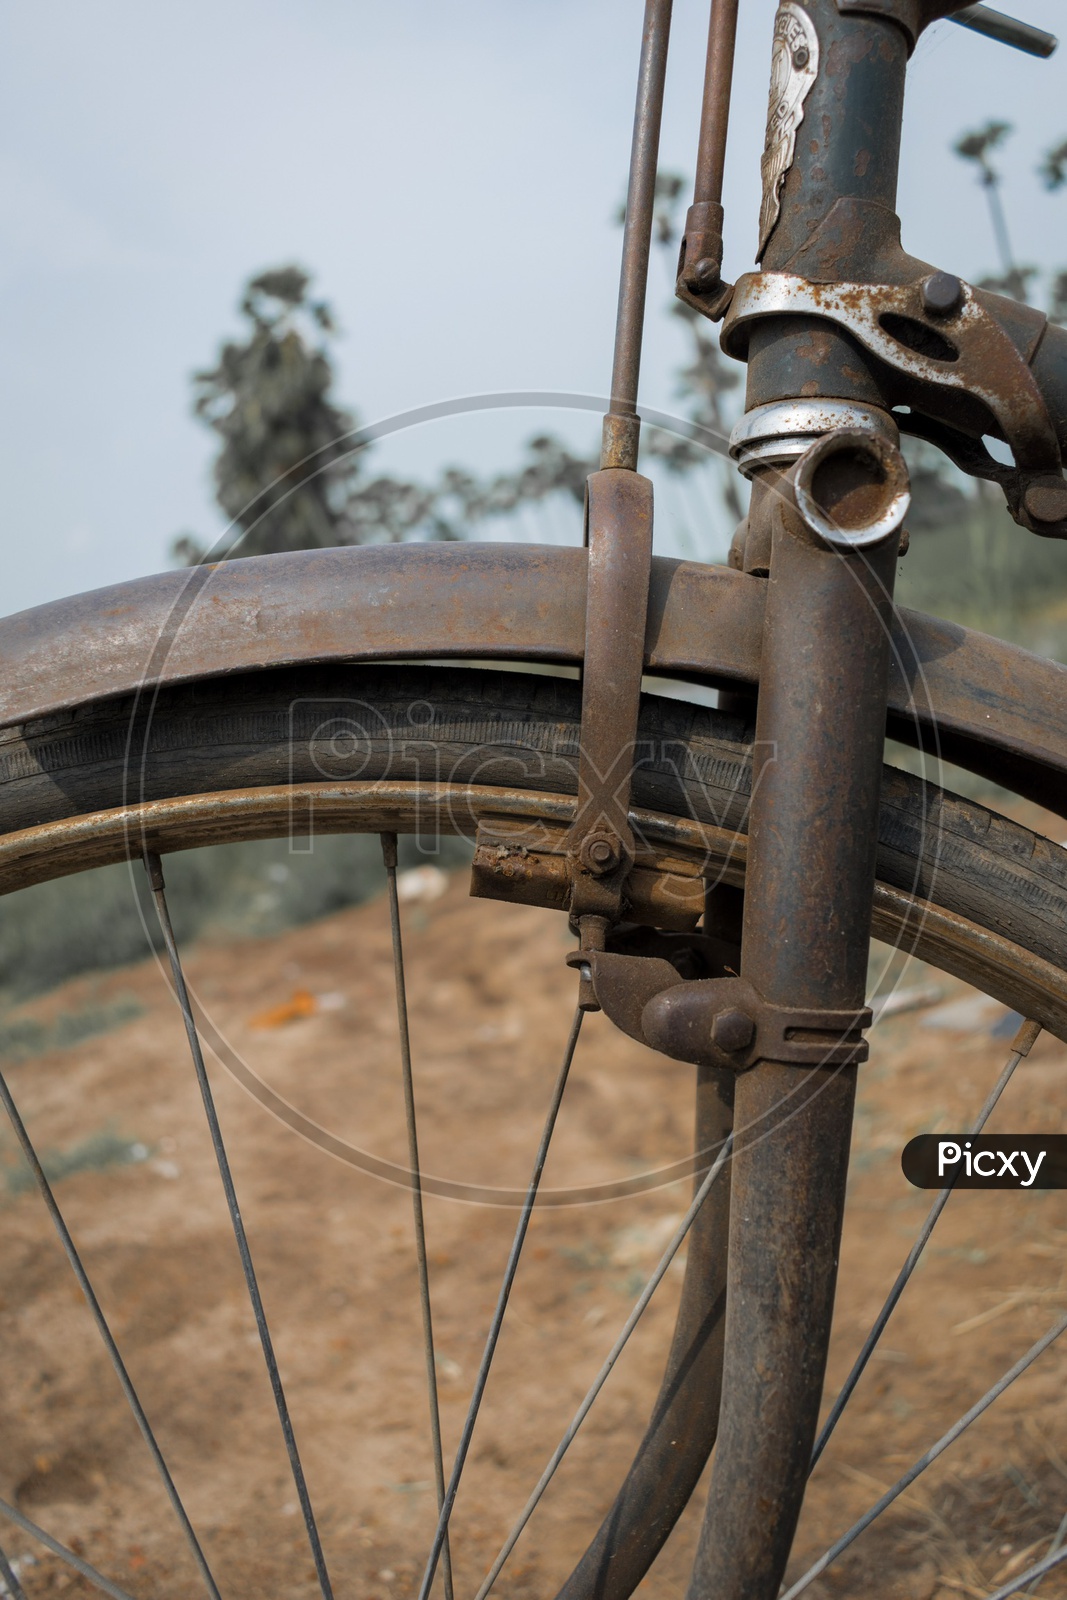 Brakes of old vintage bicycle